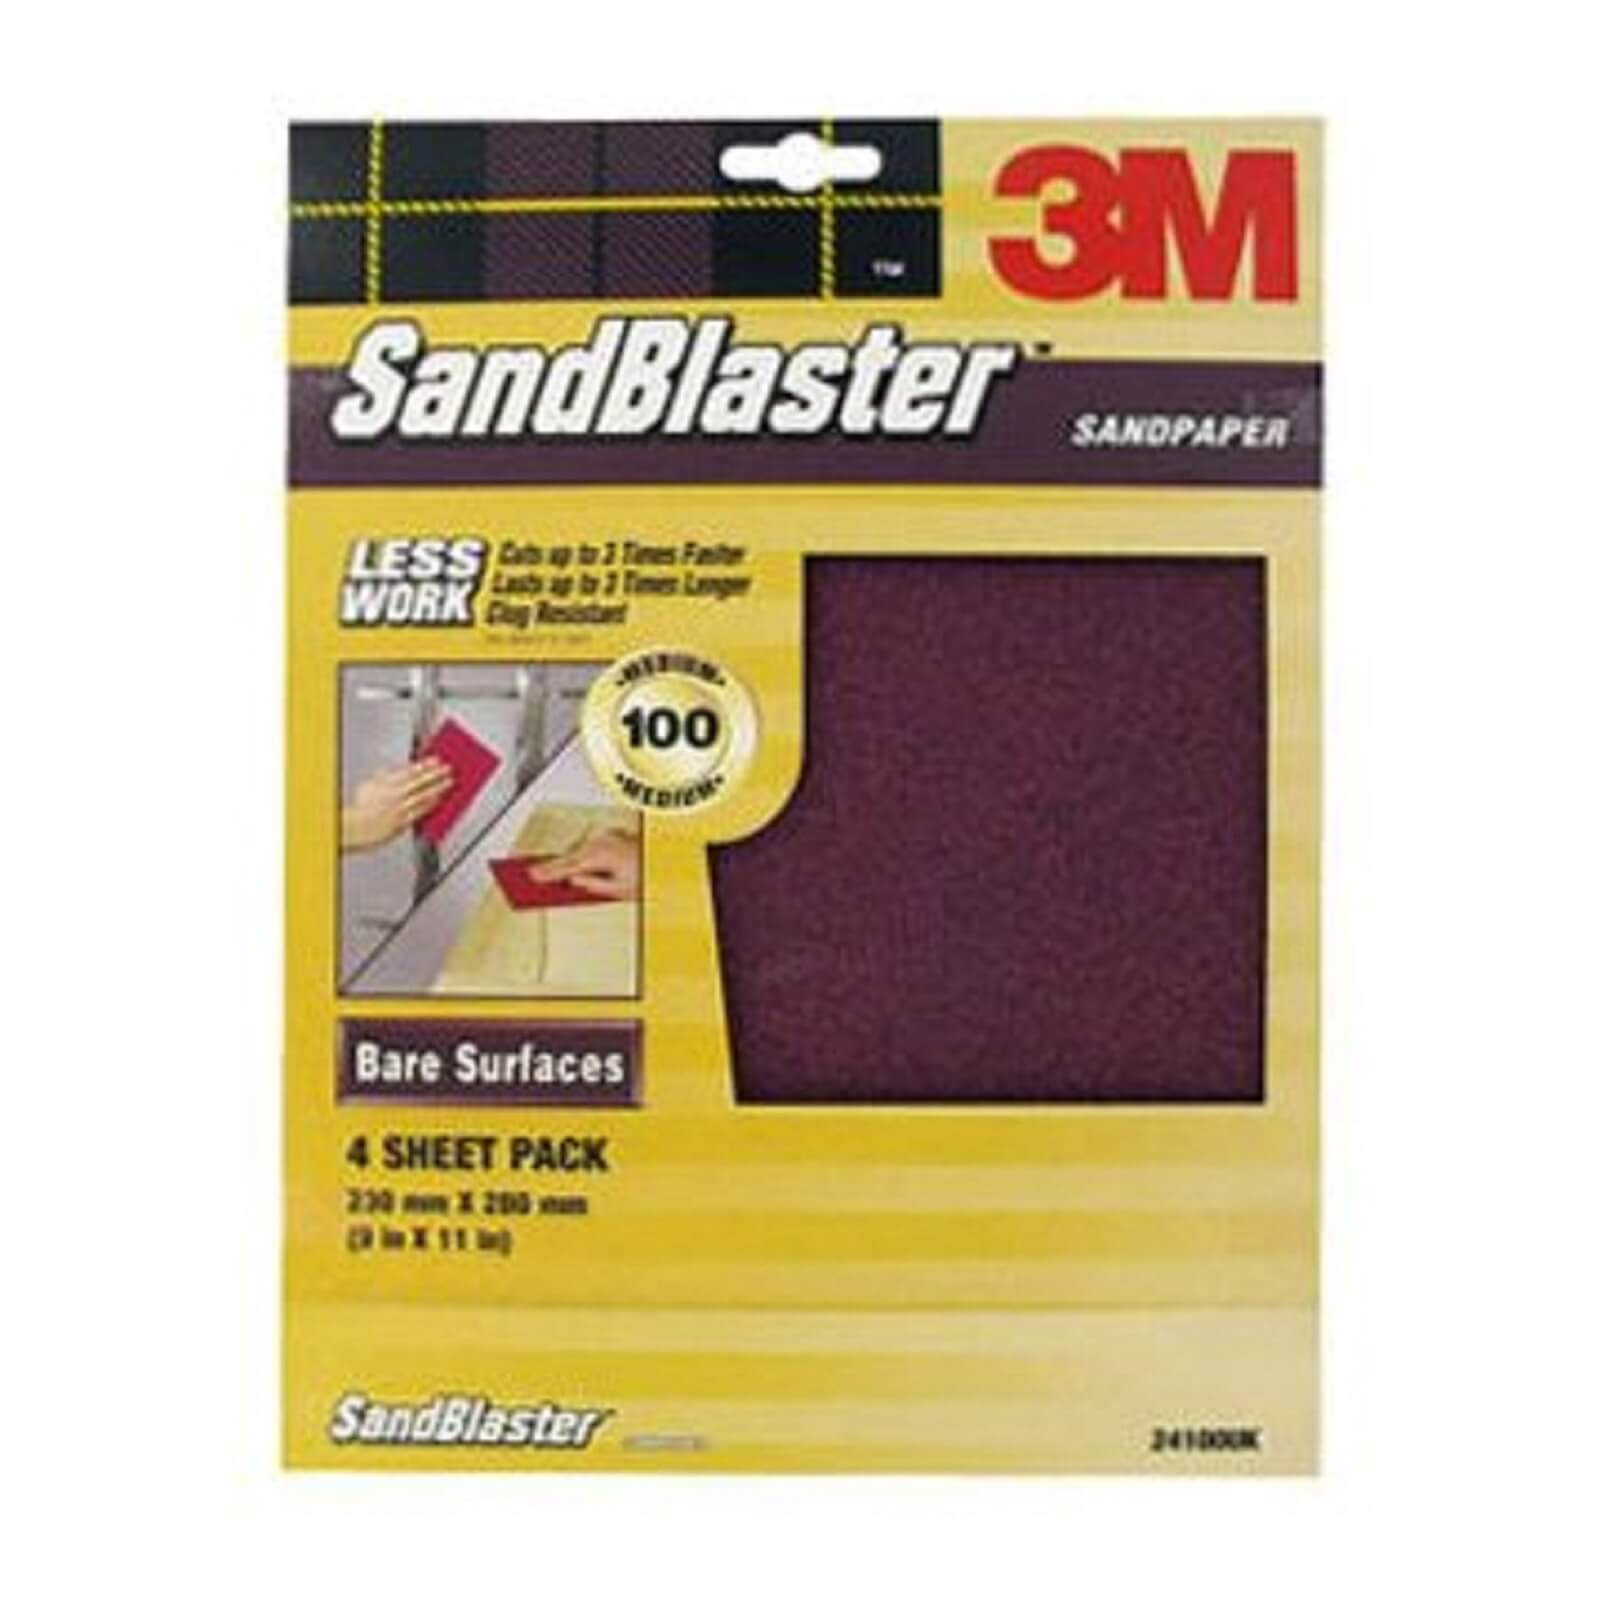 3M SandBlaster Medium P100 Sandpaper - 4 pack